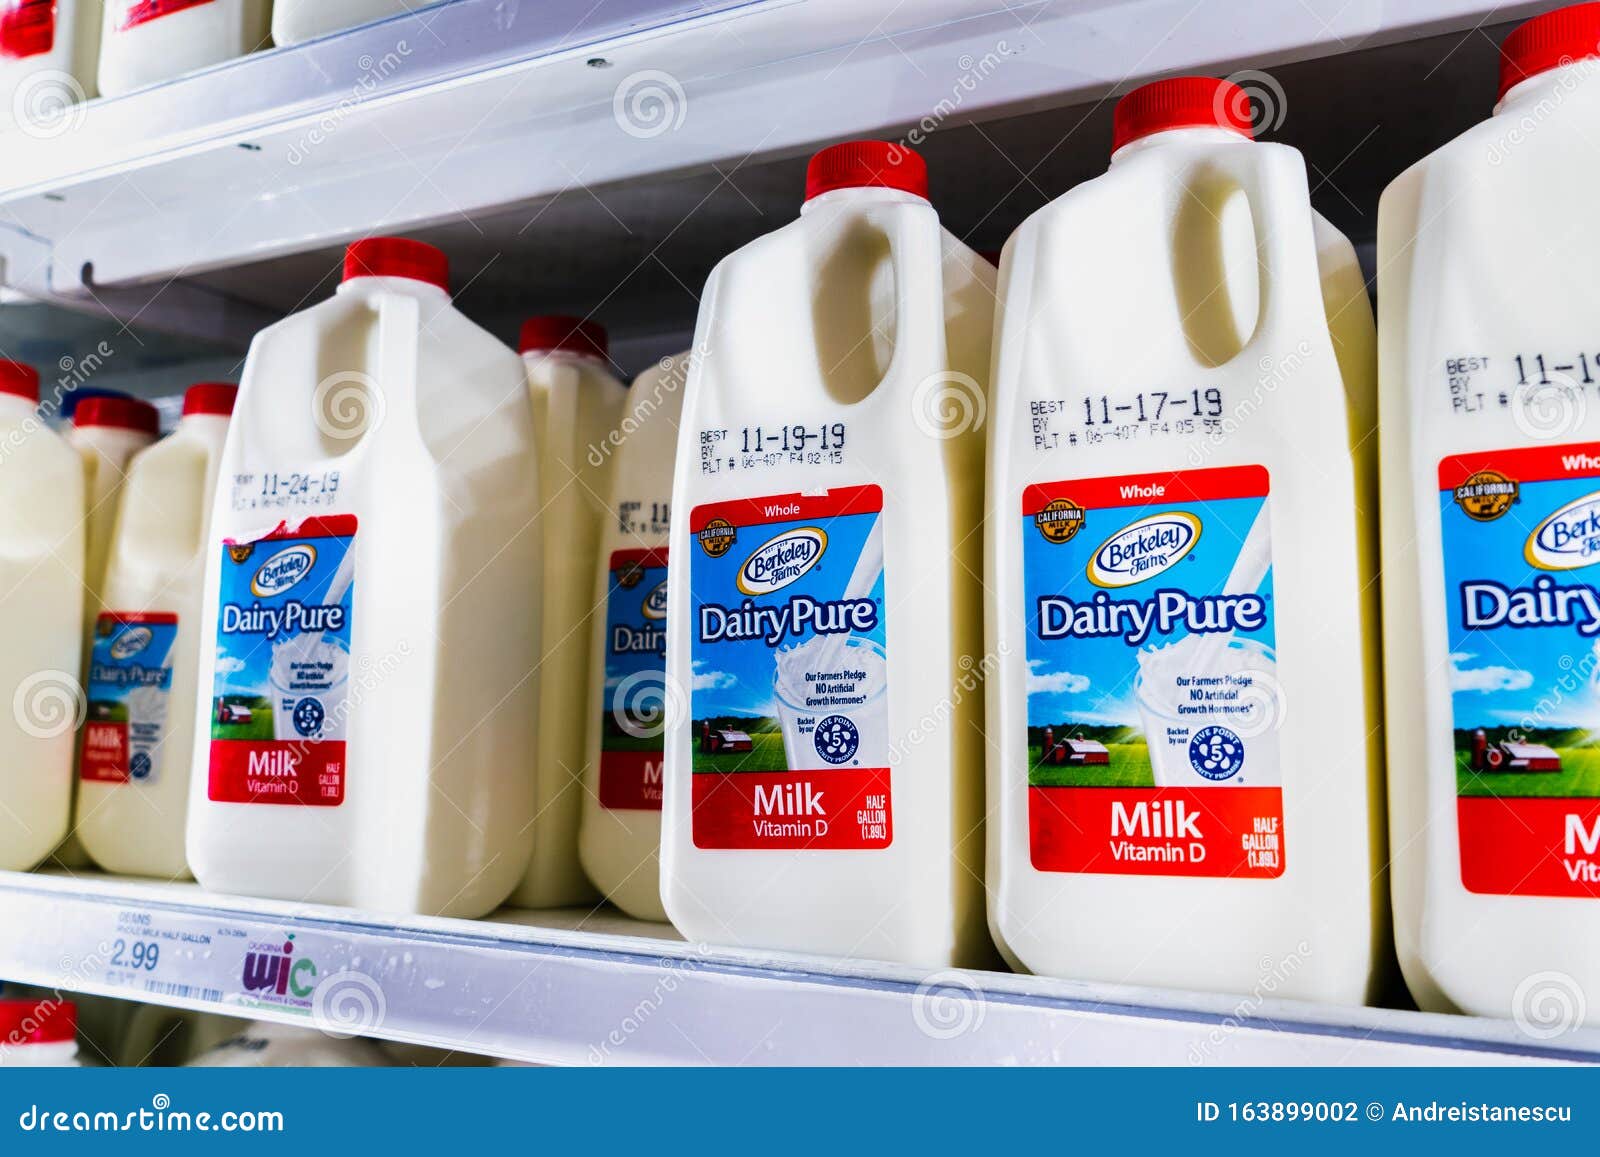 Nov 12 2019 Sunnyvale Ca Usa Dairypure Milk On Shelves In A